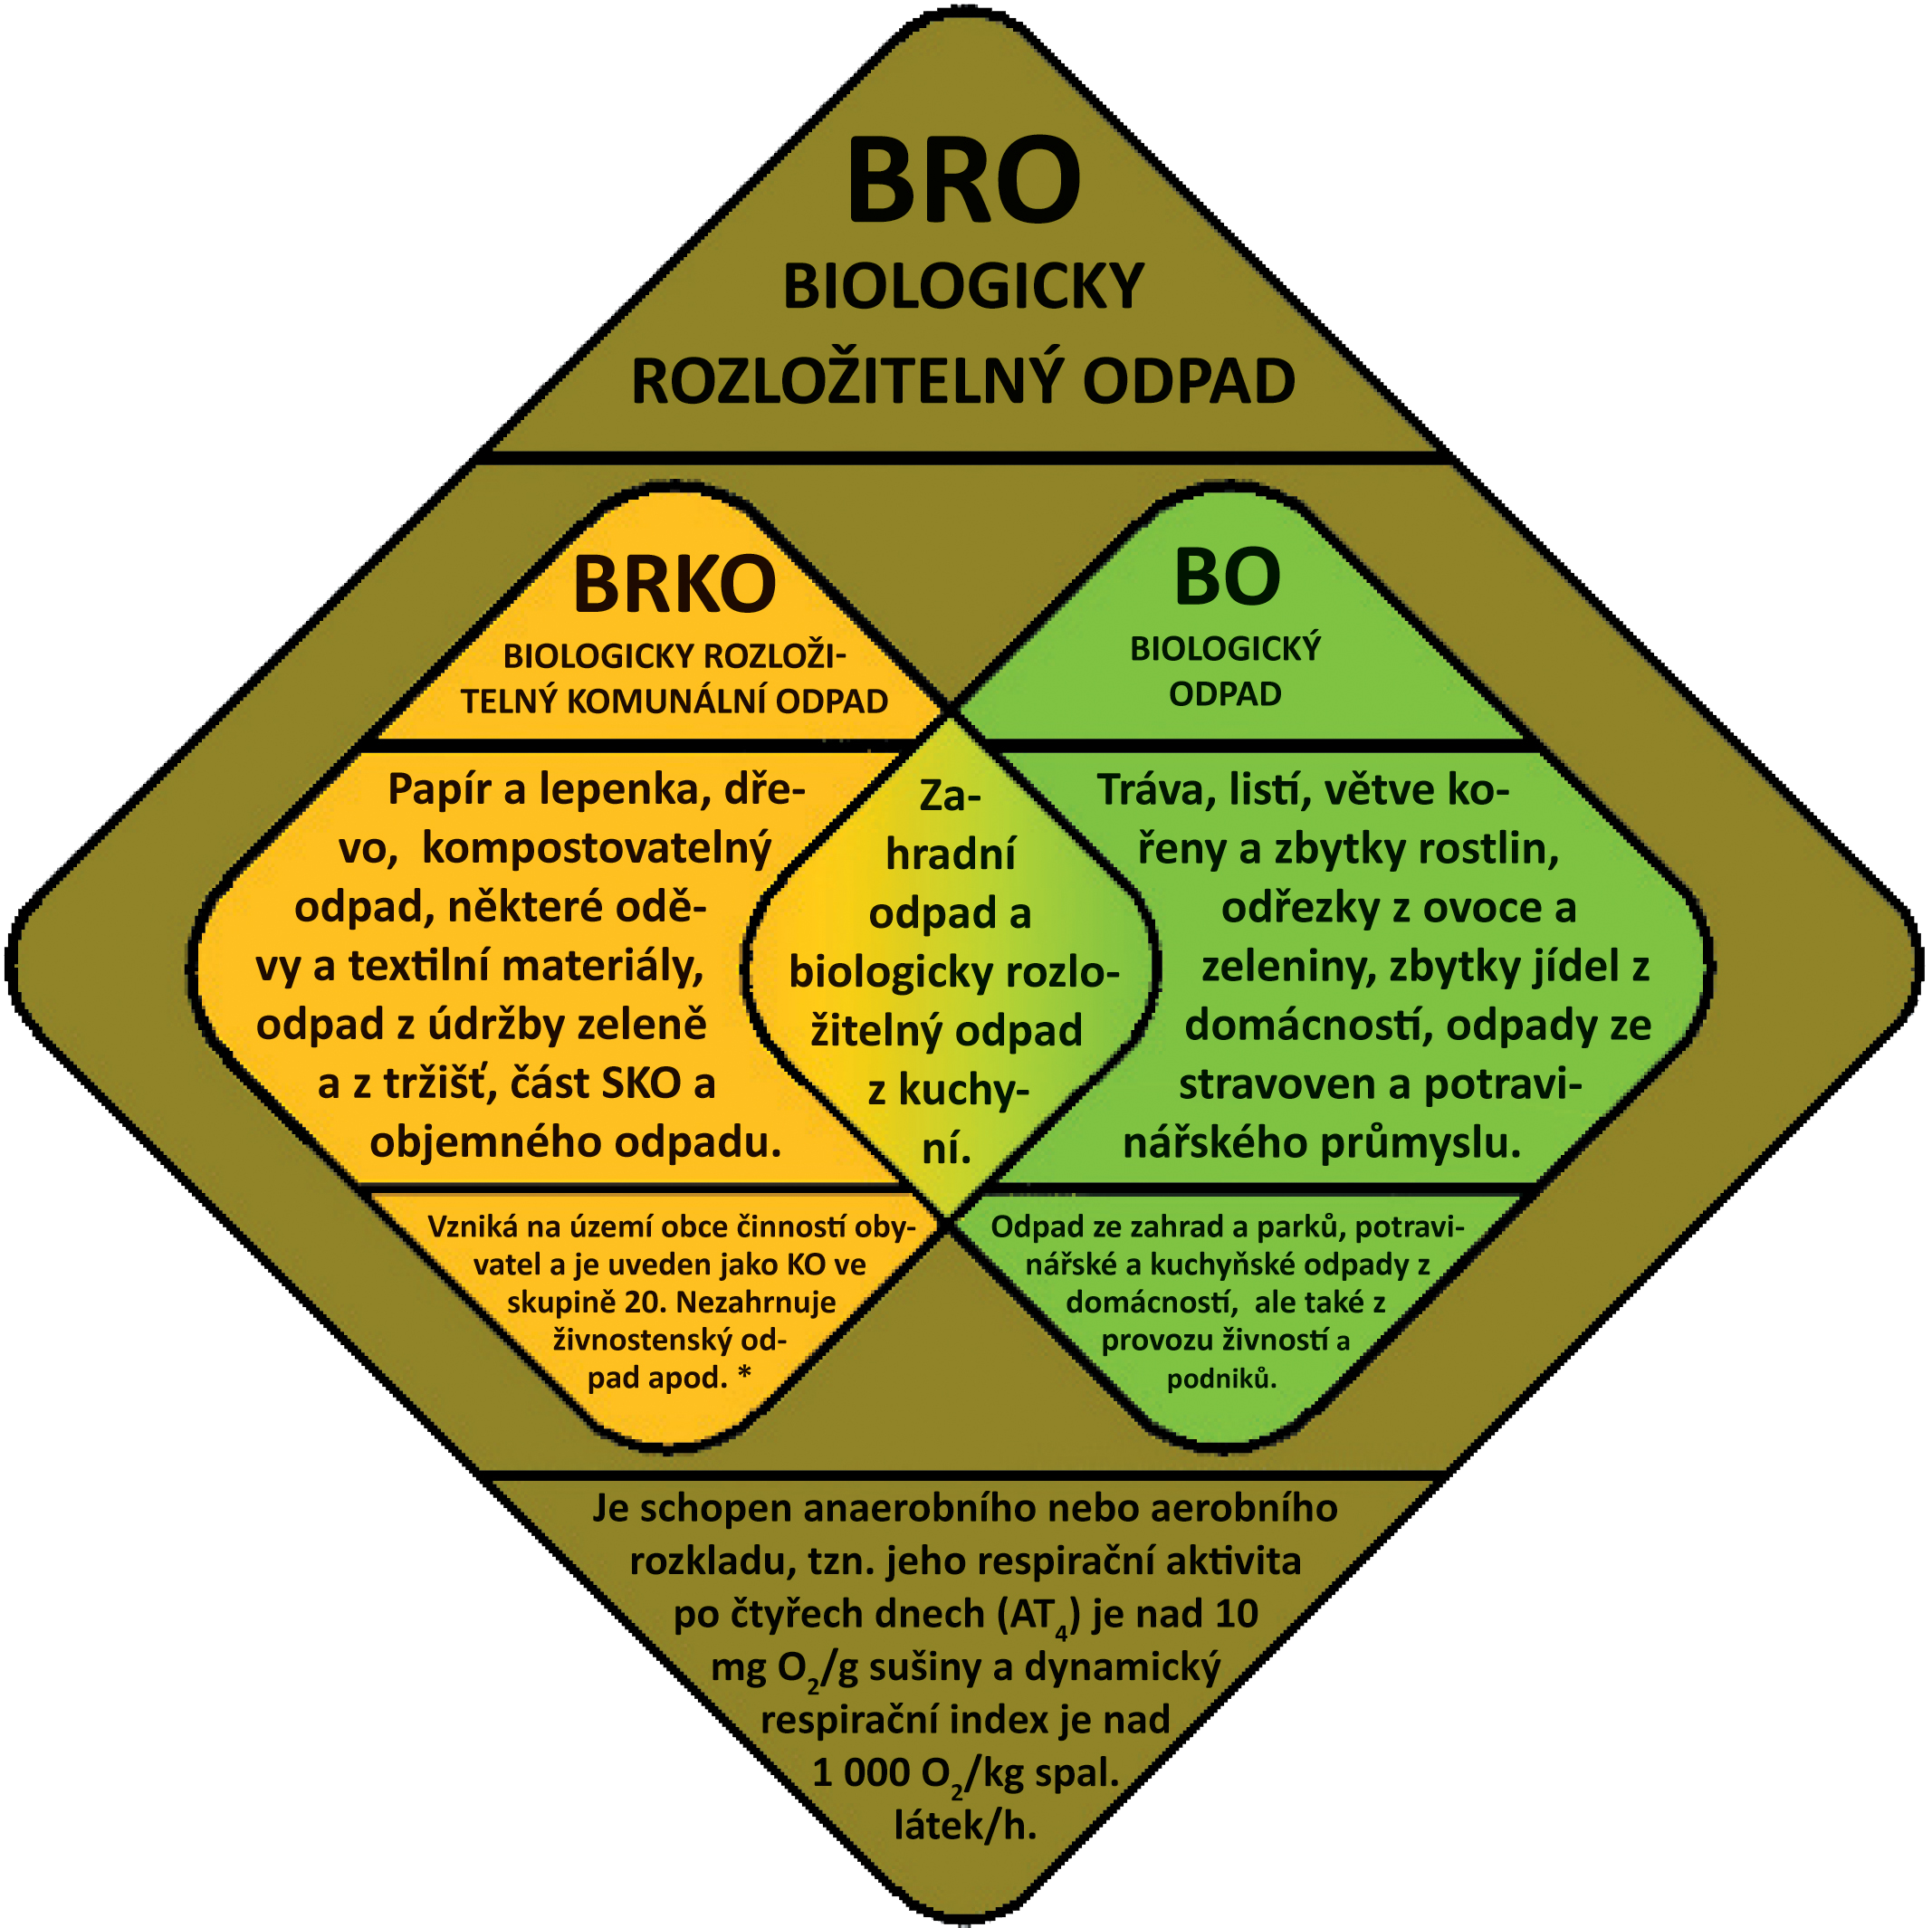 Biologicky rozložitelný odpad (BRO) - biologicky rozložitelný komunální odpad (BRKO) a biologický odpad (BO).